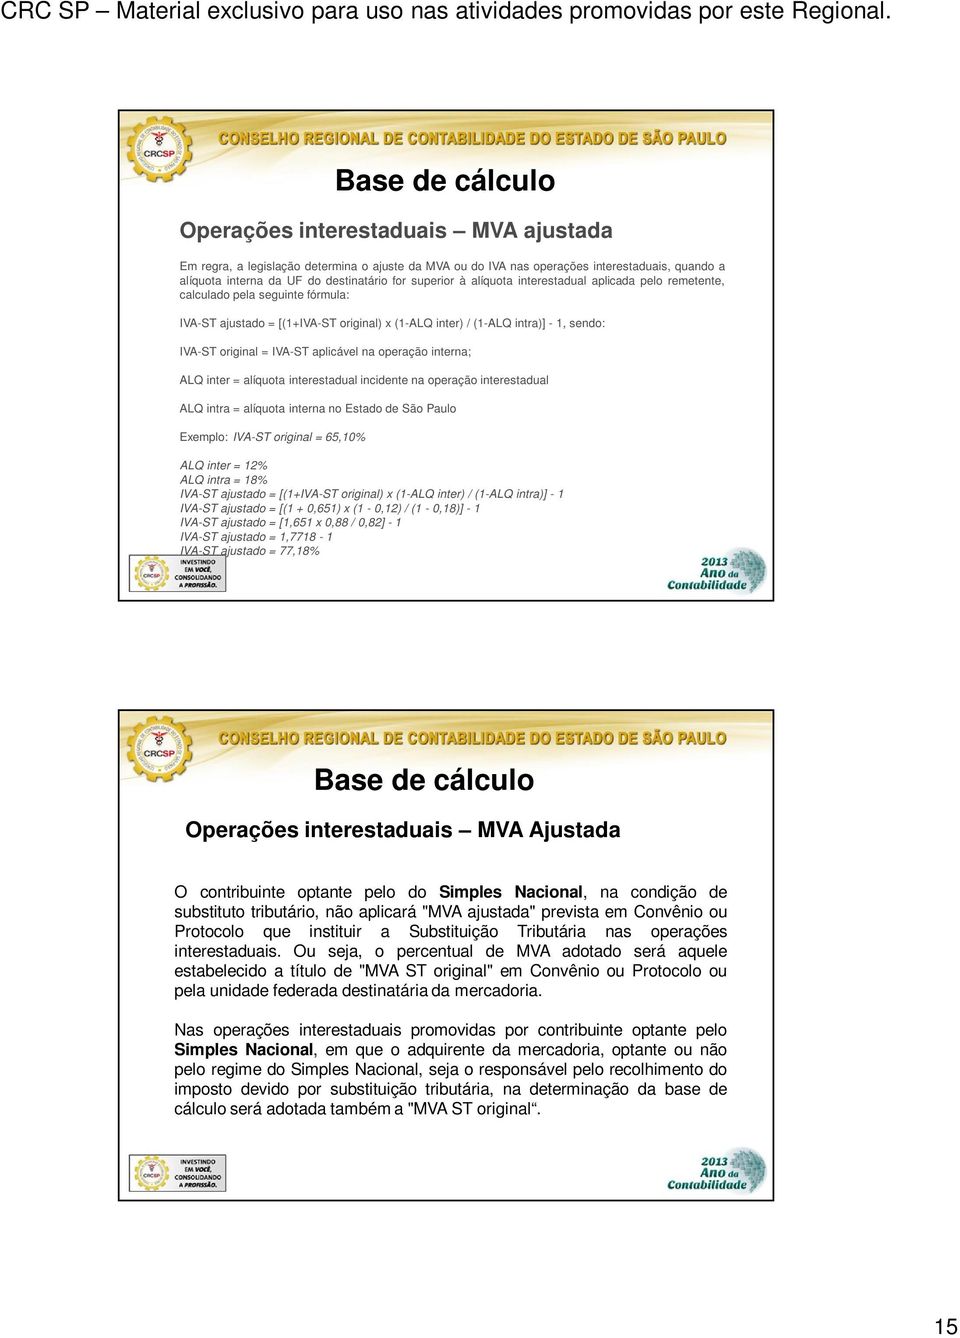 IVA-ST aplicável na operação interna; ALQ inter = alíquota interestadual incidente na operação interestadual ALQ intra = alíquota interna no Estado de São Paulo Exemplo: IVA-ST original = 65,10% ALQ